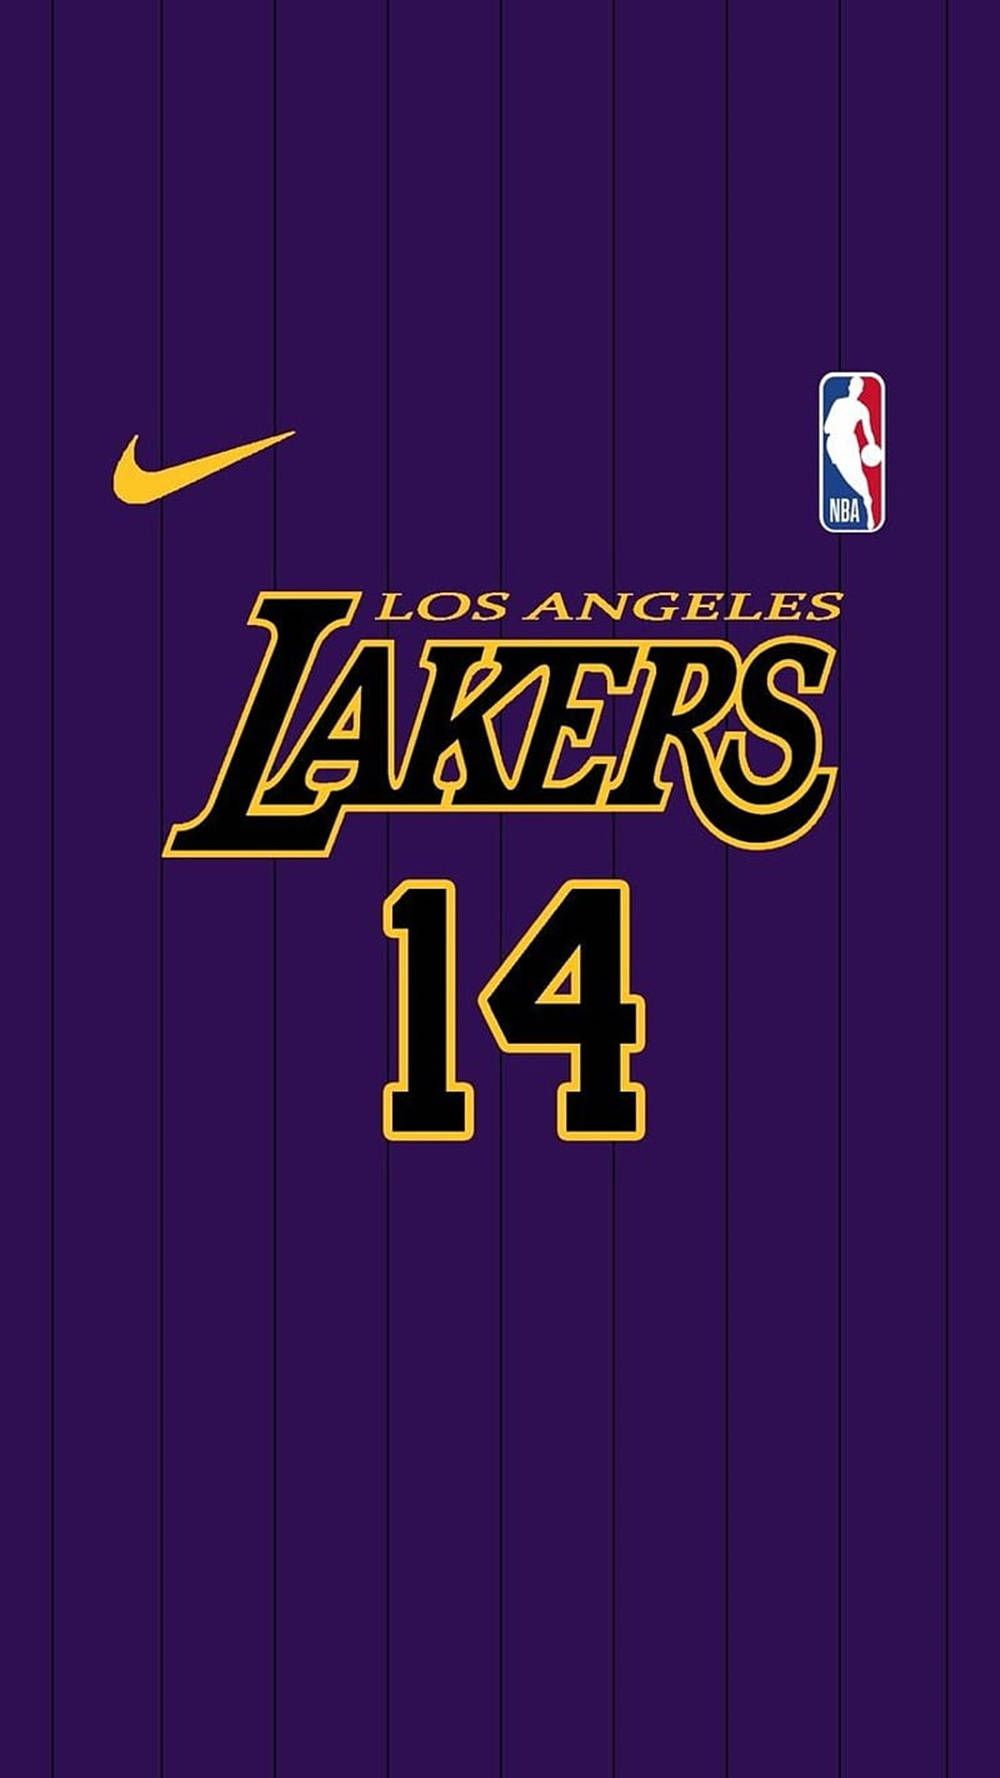 Download Lakers Logo 14 NBA Wallpaper